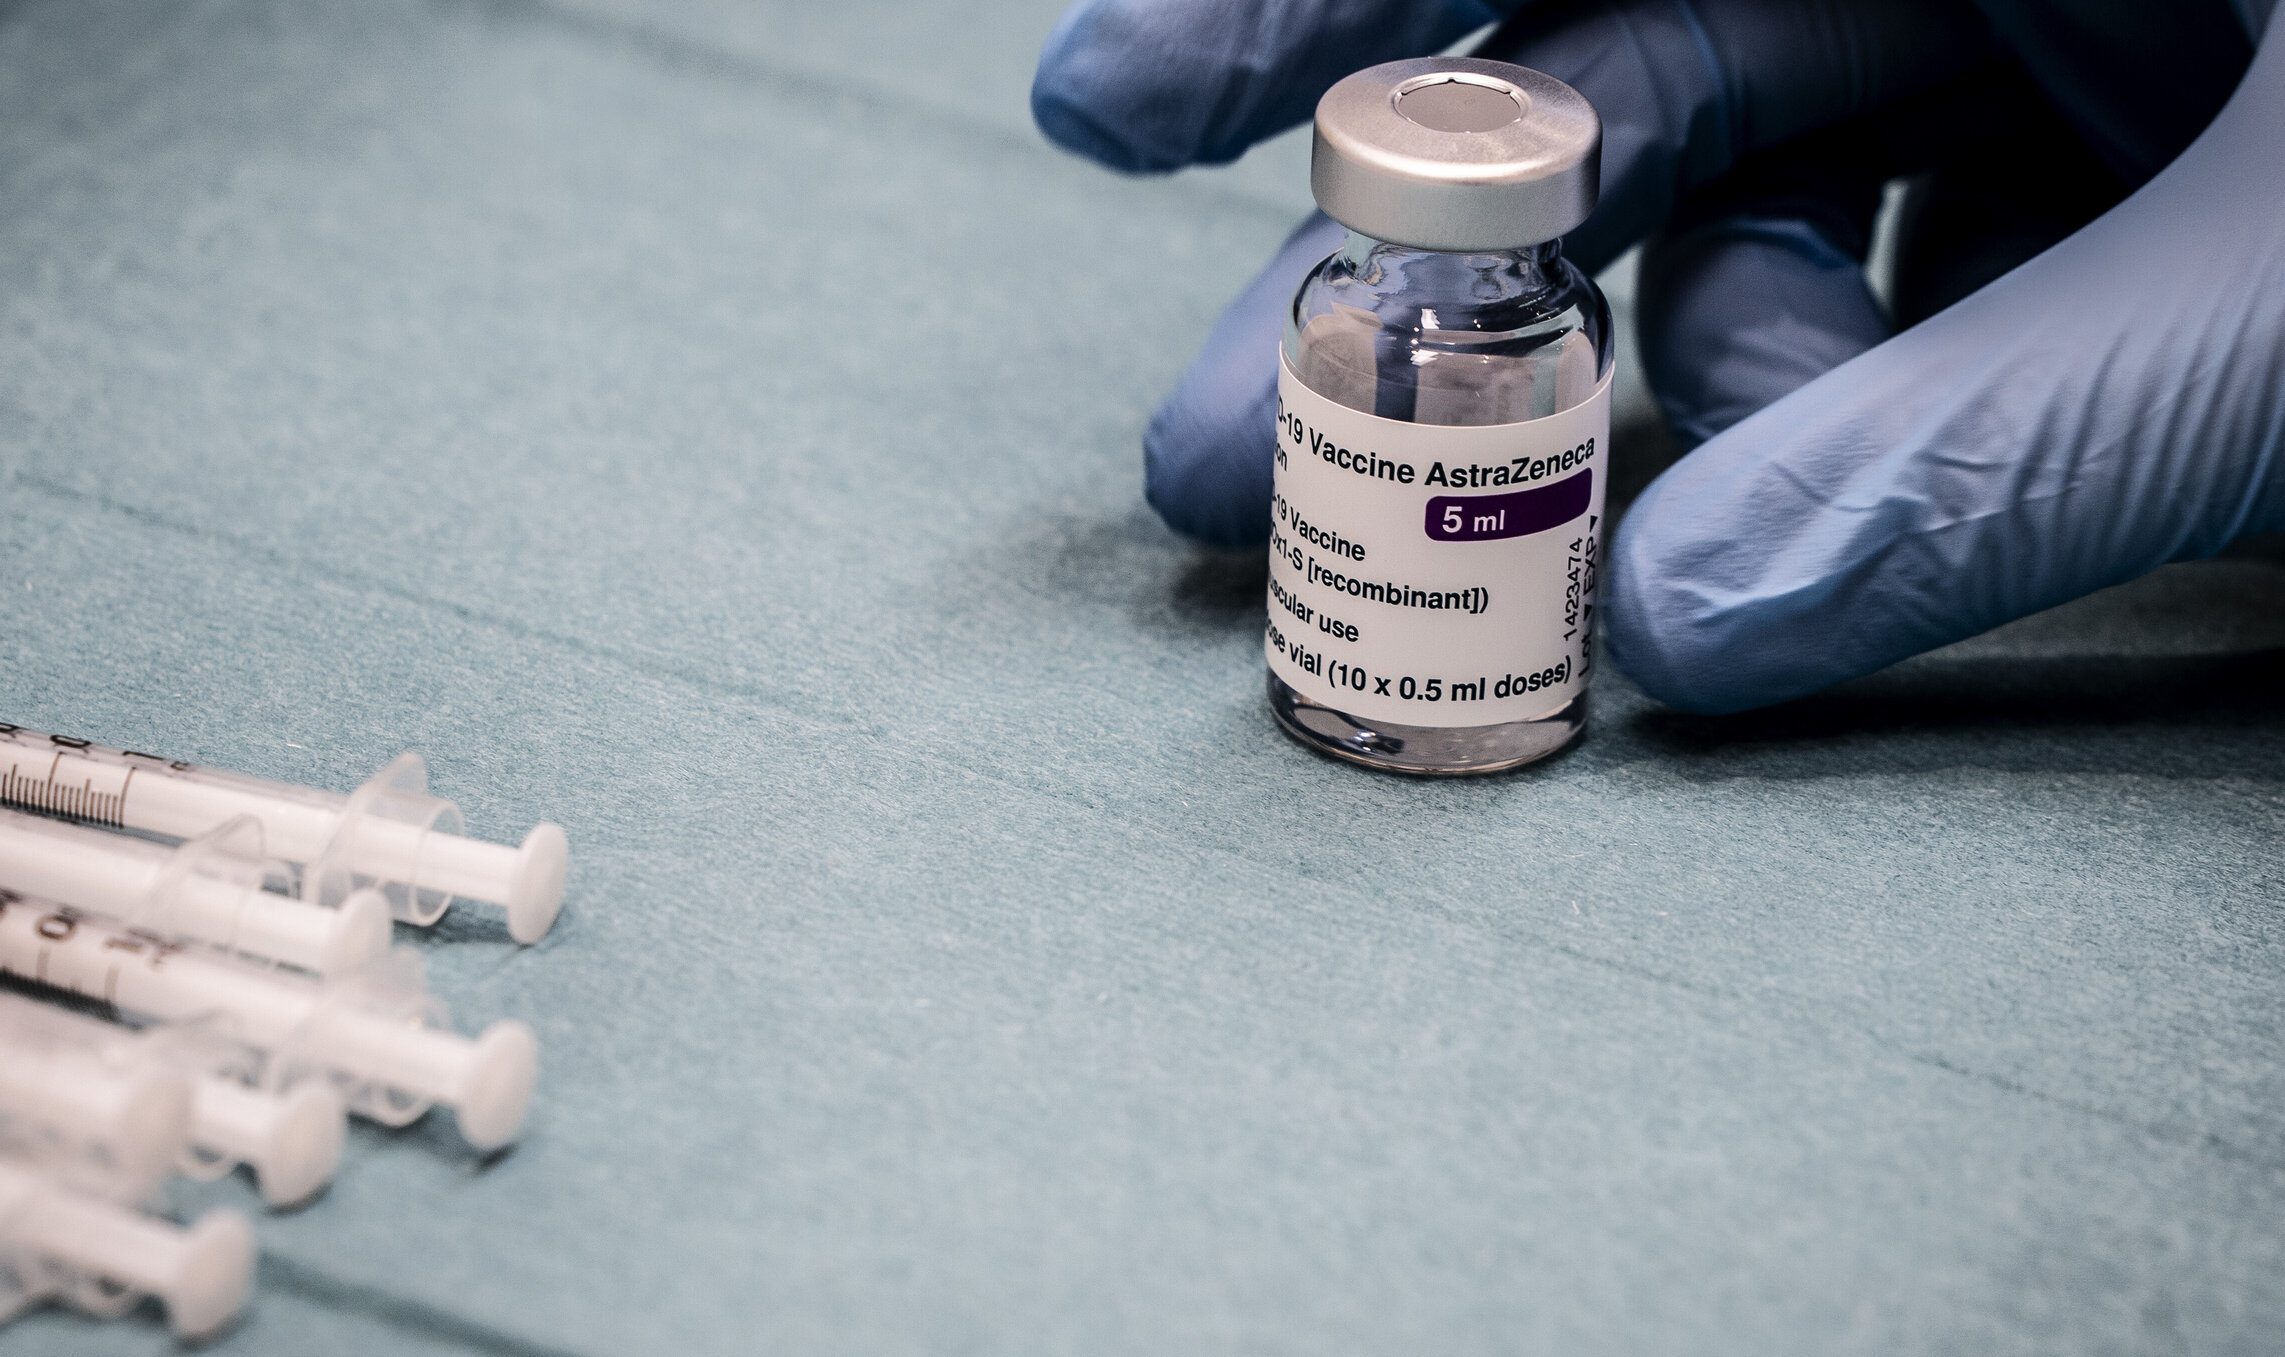 Daneza care a decedat după vaccinarea cu AstraZeneca a avut „simptome neobișnuite”, spune Agenția pentru Medicamente din Danemarca